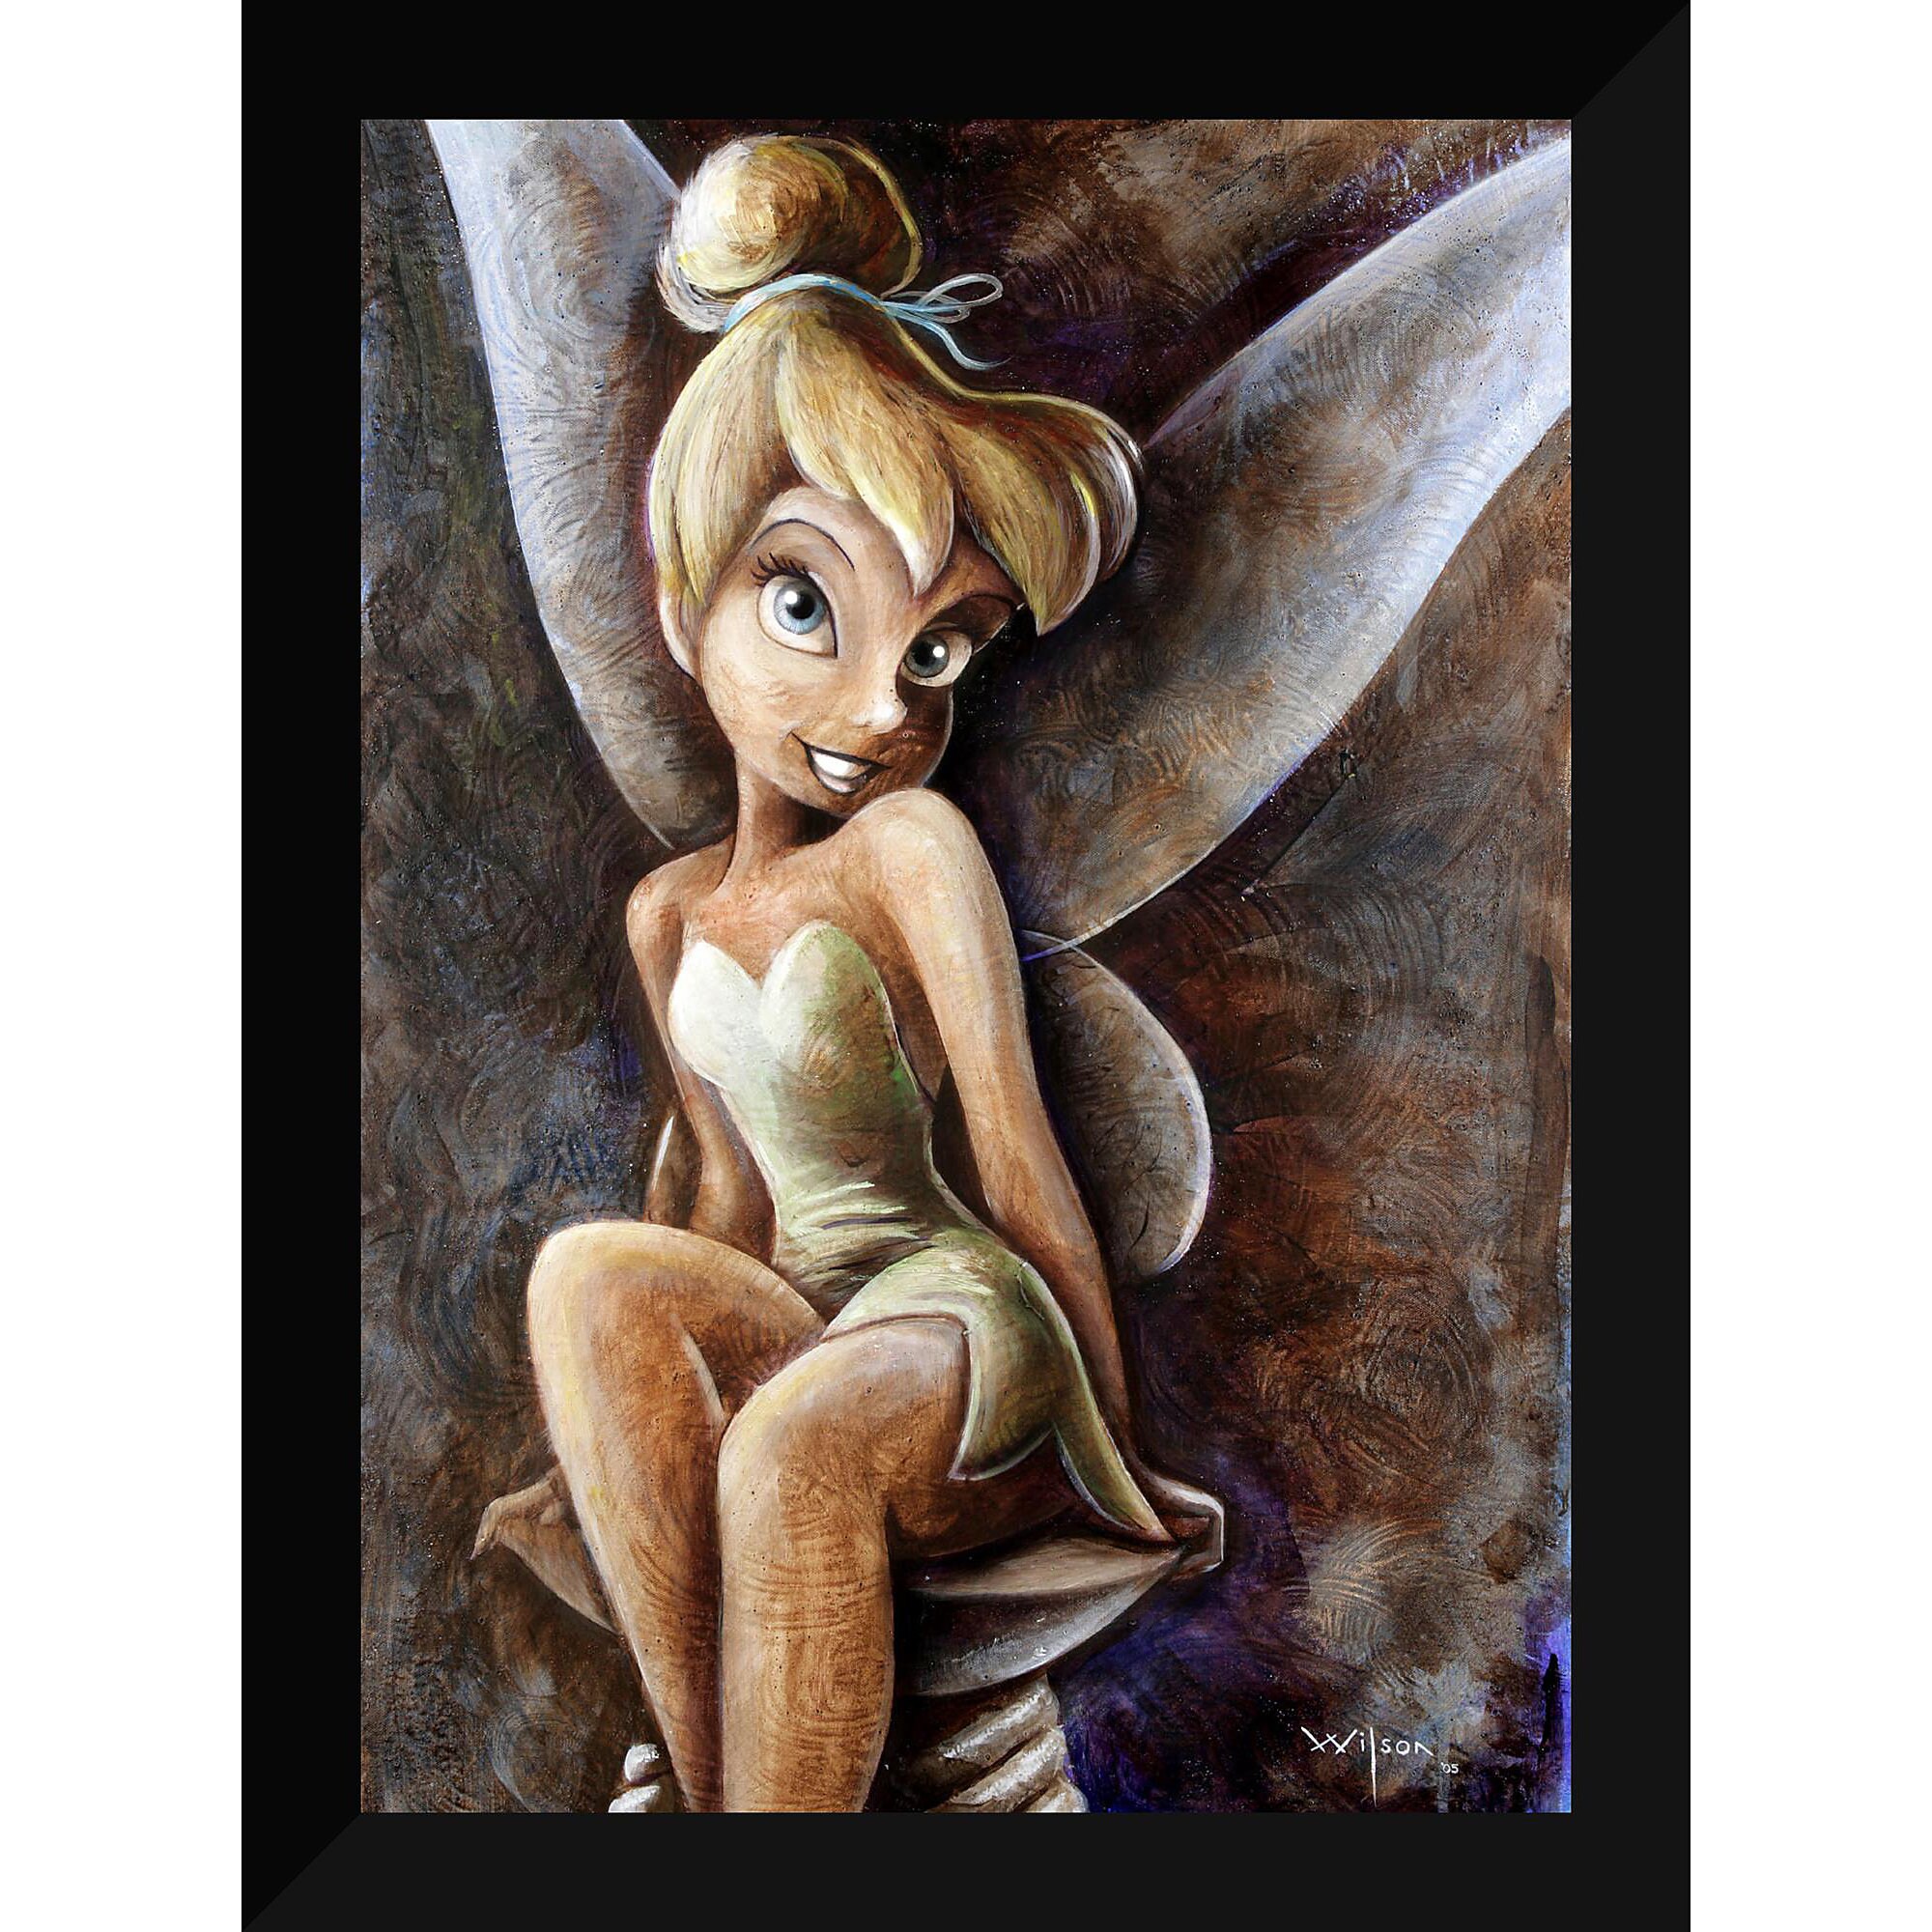 Tinker Bell ''Classic Tinker Bell'' Giclée by Darren Wilson